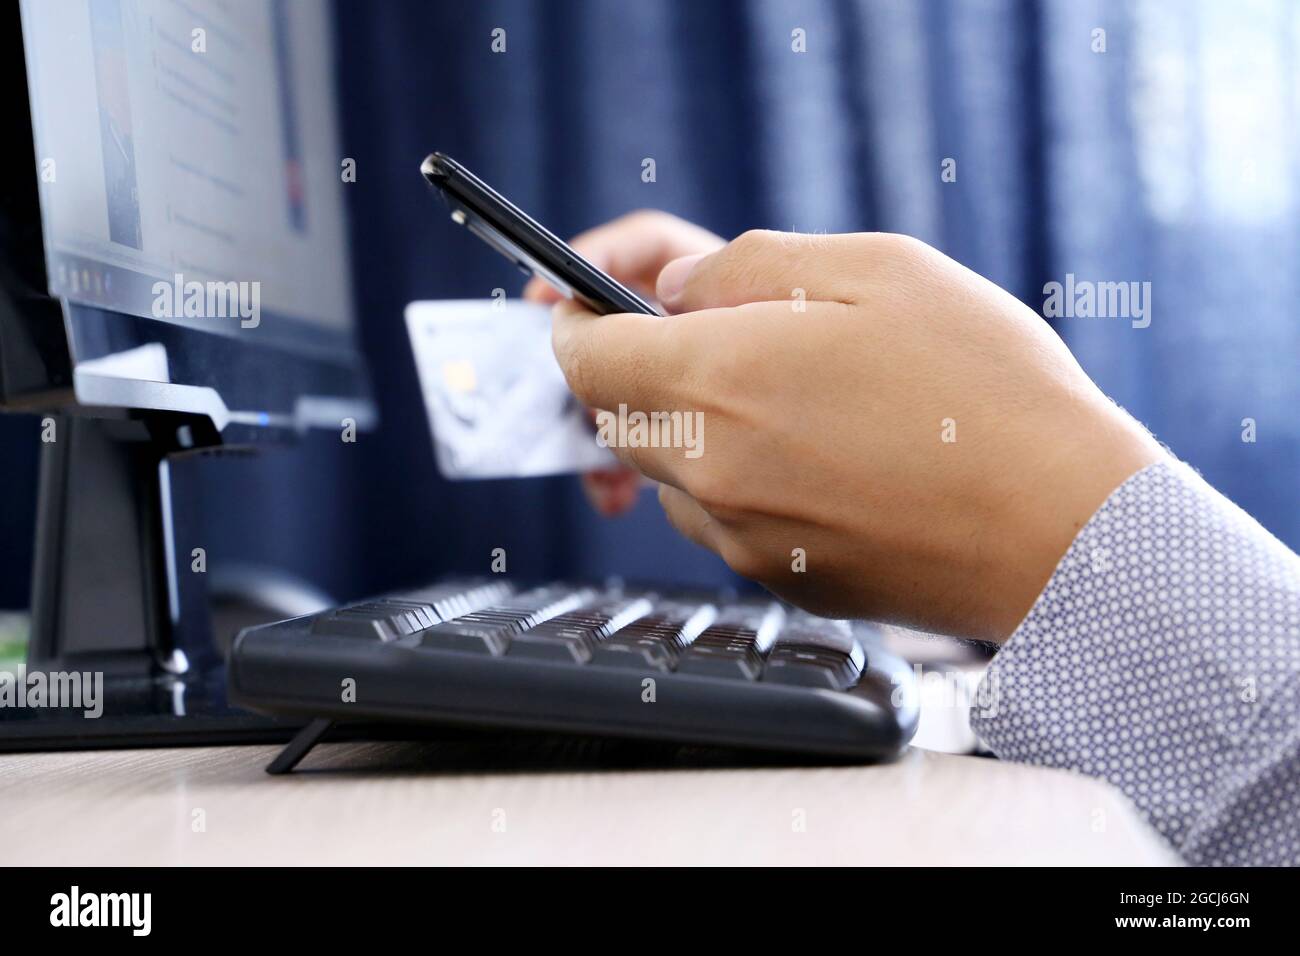 Man tient le smartphone et la saisie de carte de crédit sur le clavier du PC. Concept d'achat et de paiement en ligne, transactions financières Banque D'Images